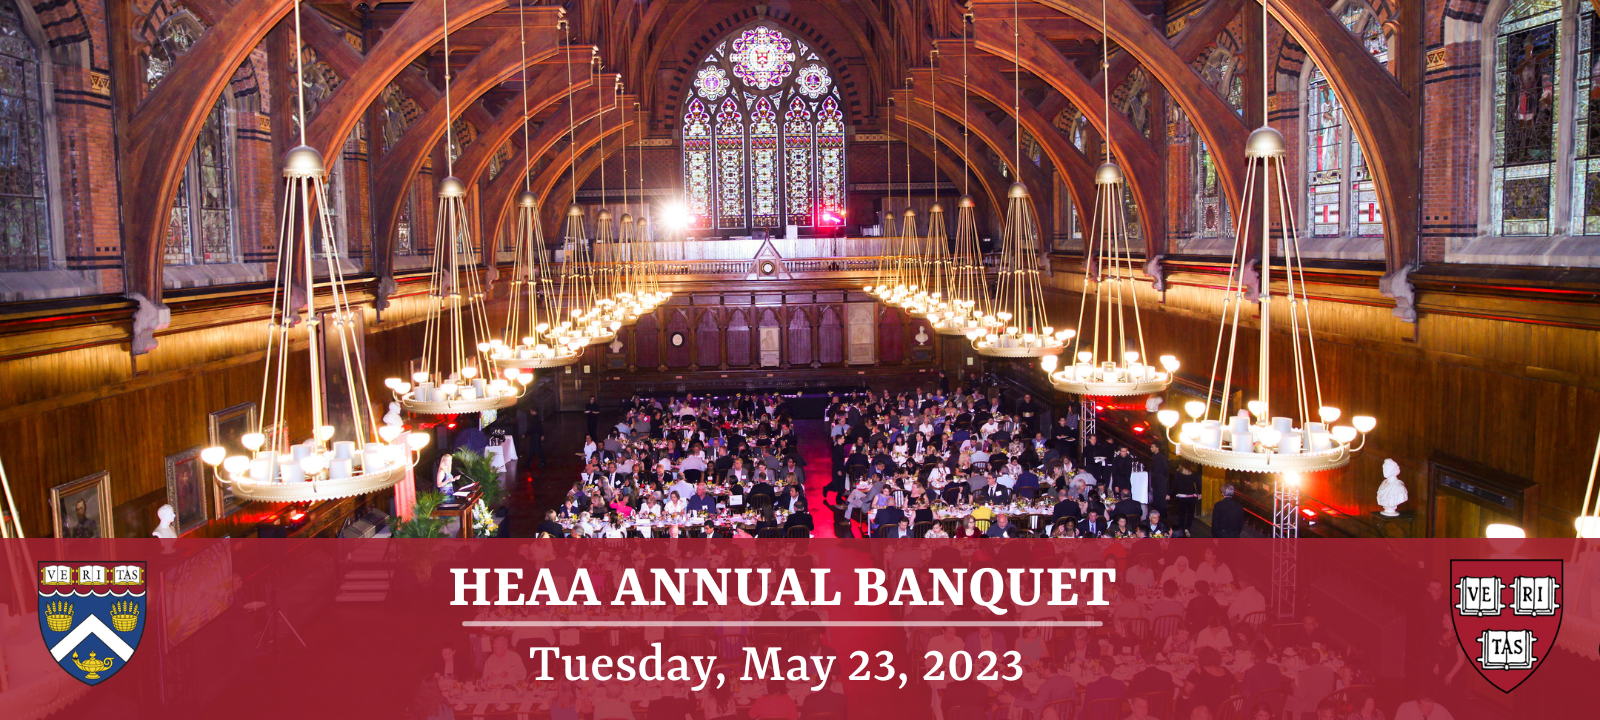 HEAA Annual Banquet 5.23.23